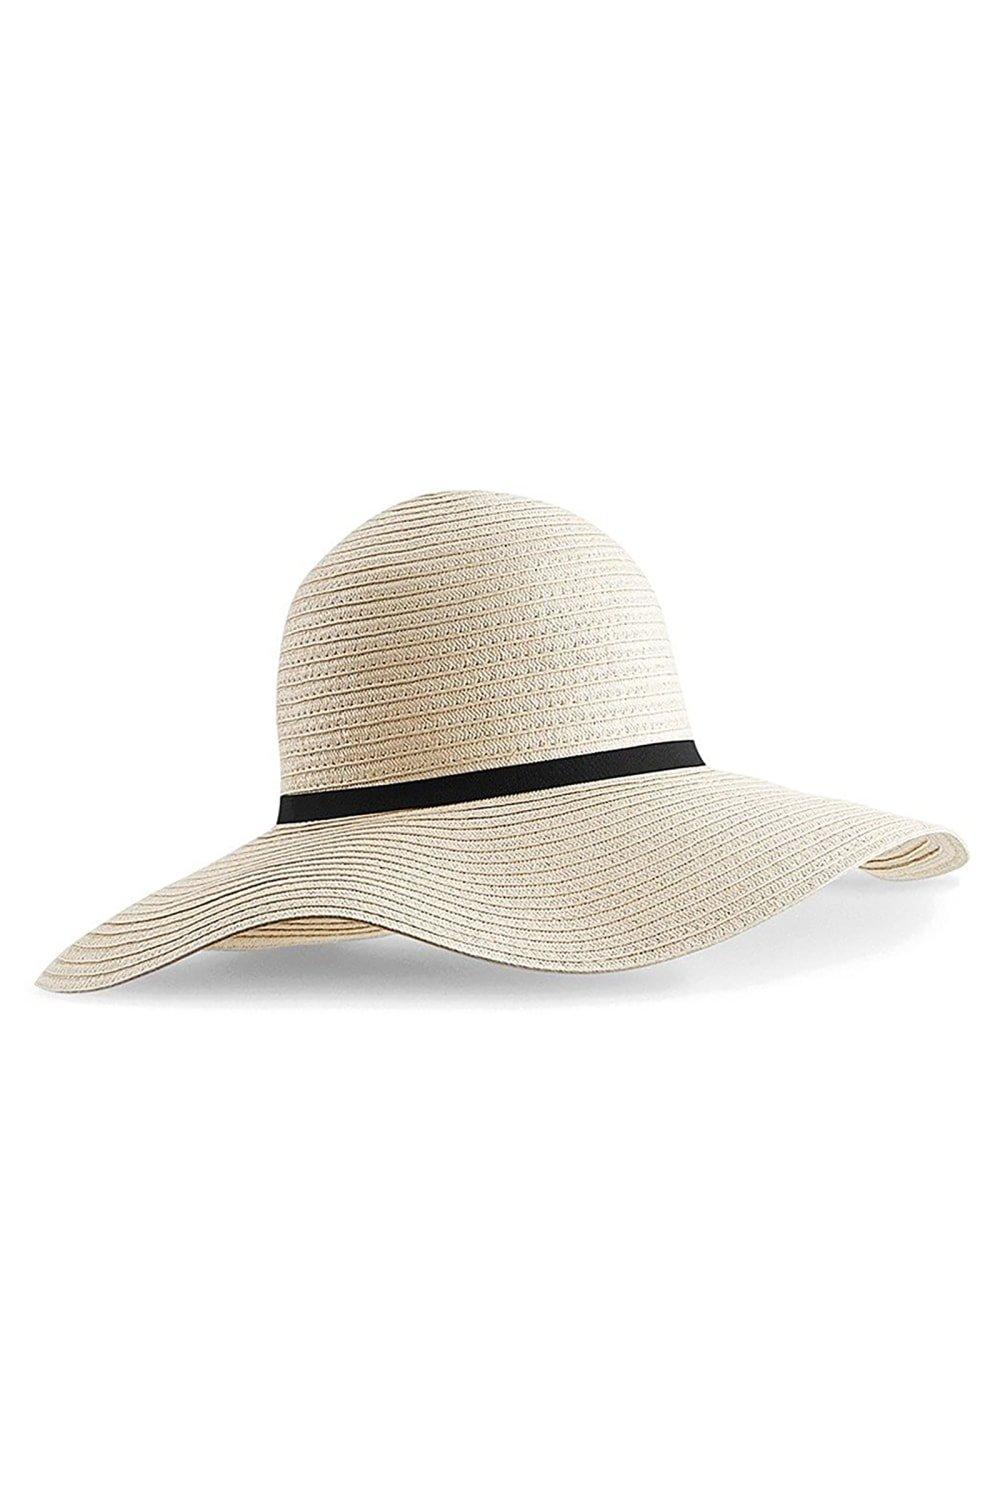 Солнечная шляпа Марбелья Beechfield, обнаженная